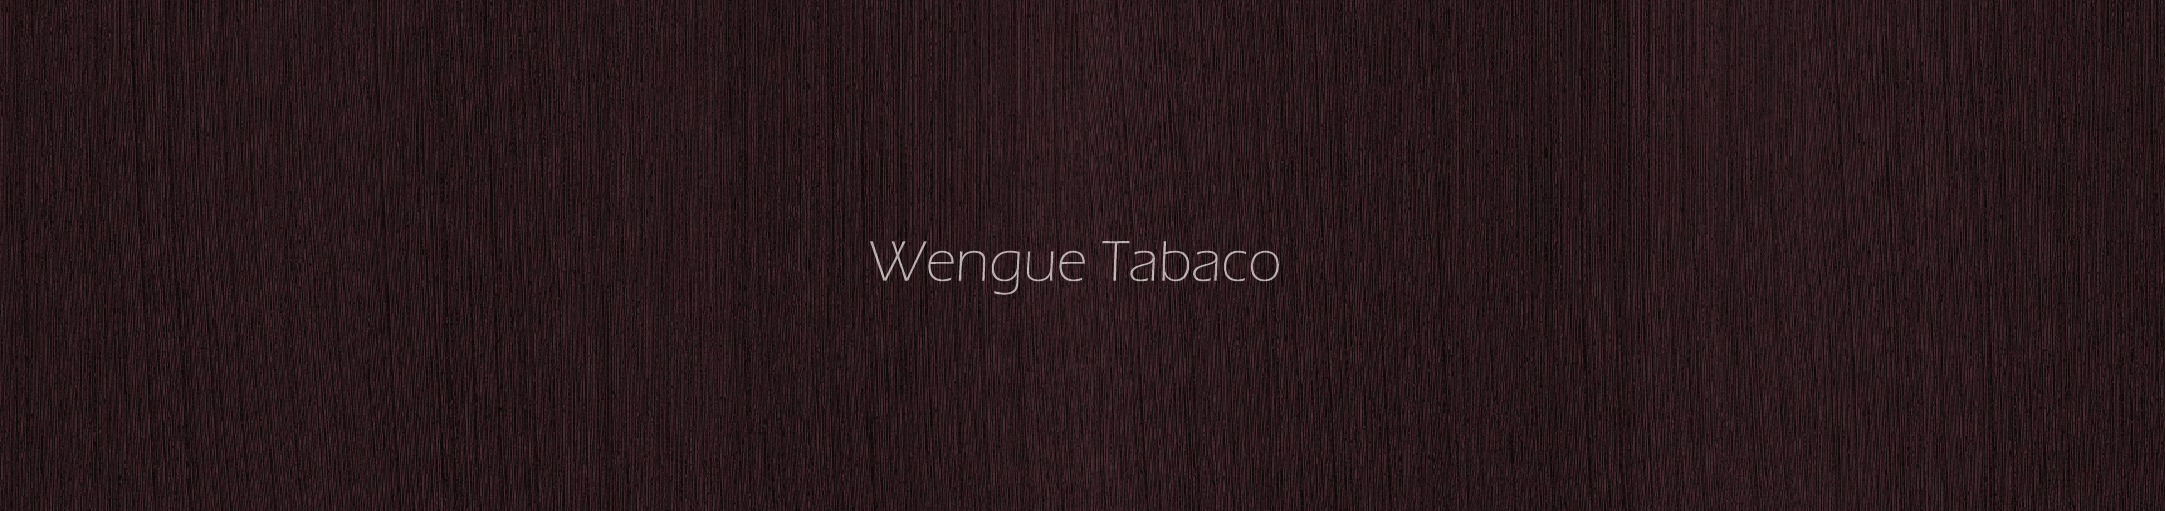 Wuengue Tabaco